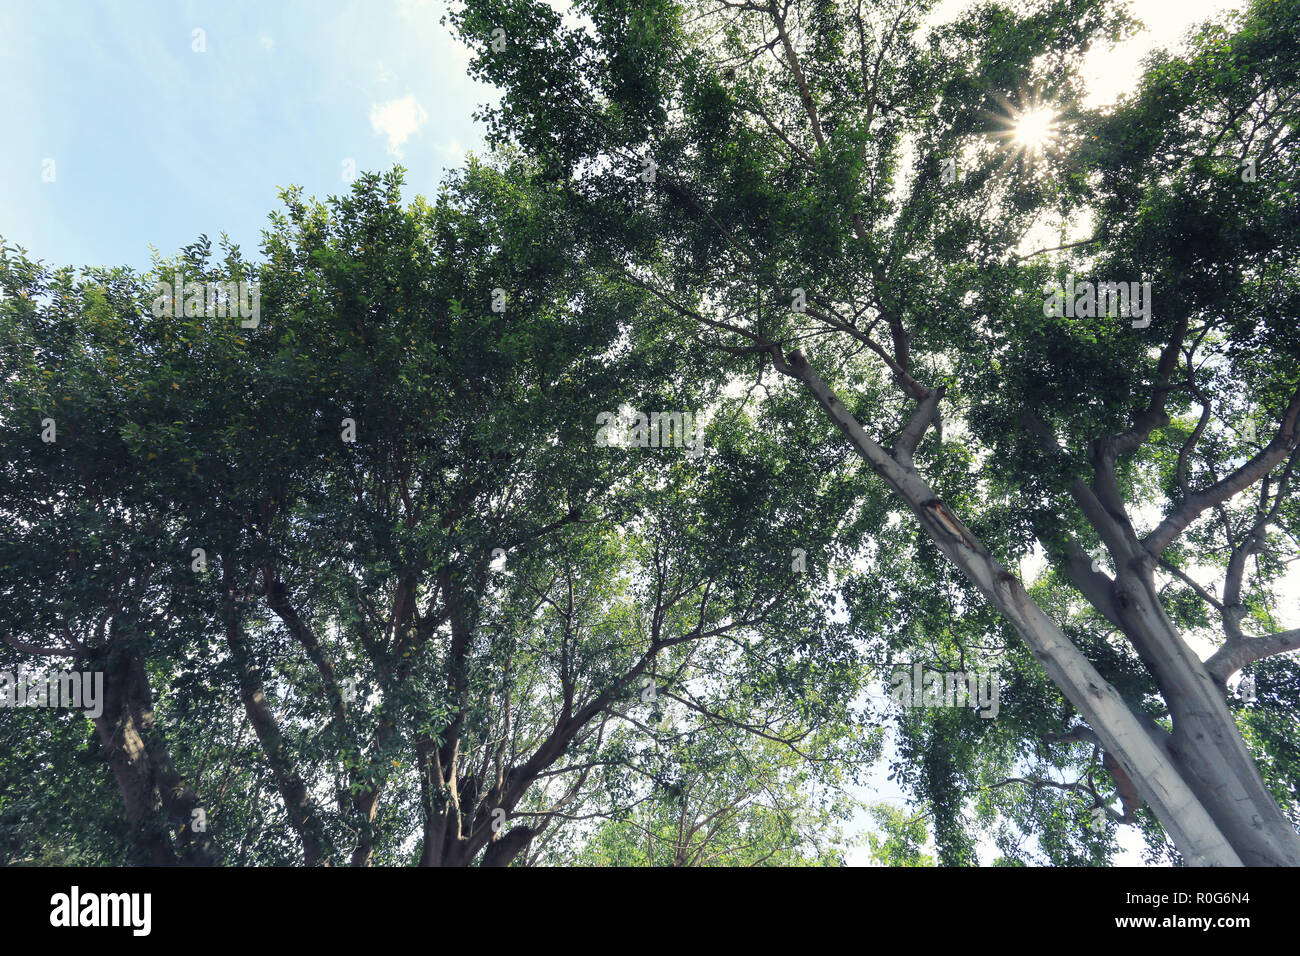 Anzeigen unter großen Baum im Garten für Design in ihre Arbeit natur Konzept. Stockfoto